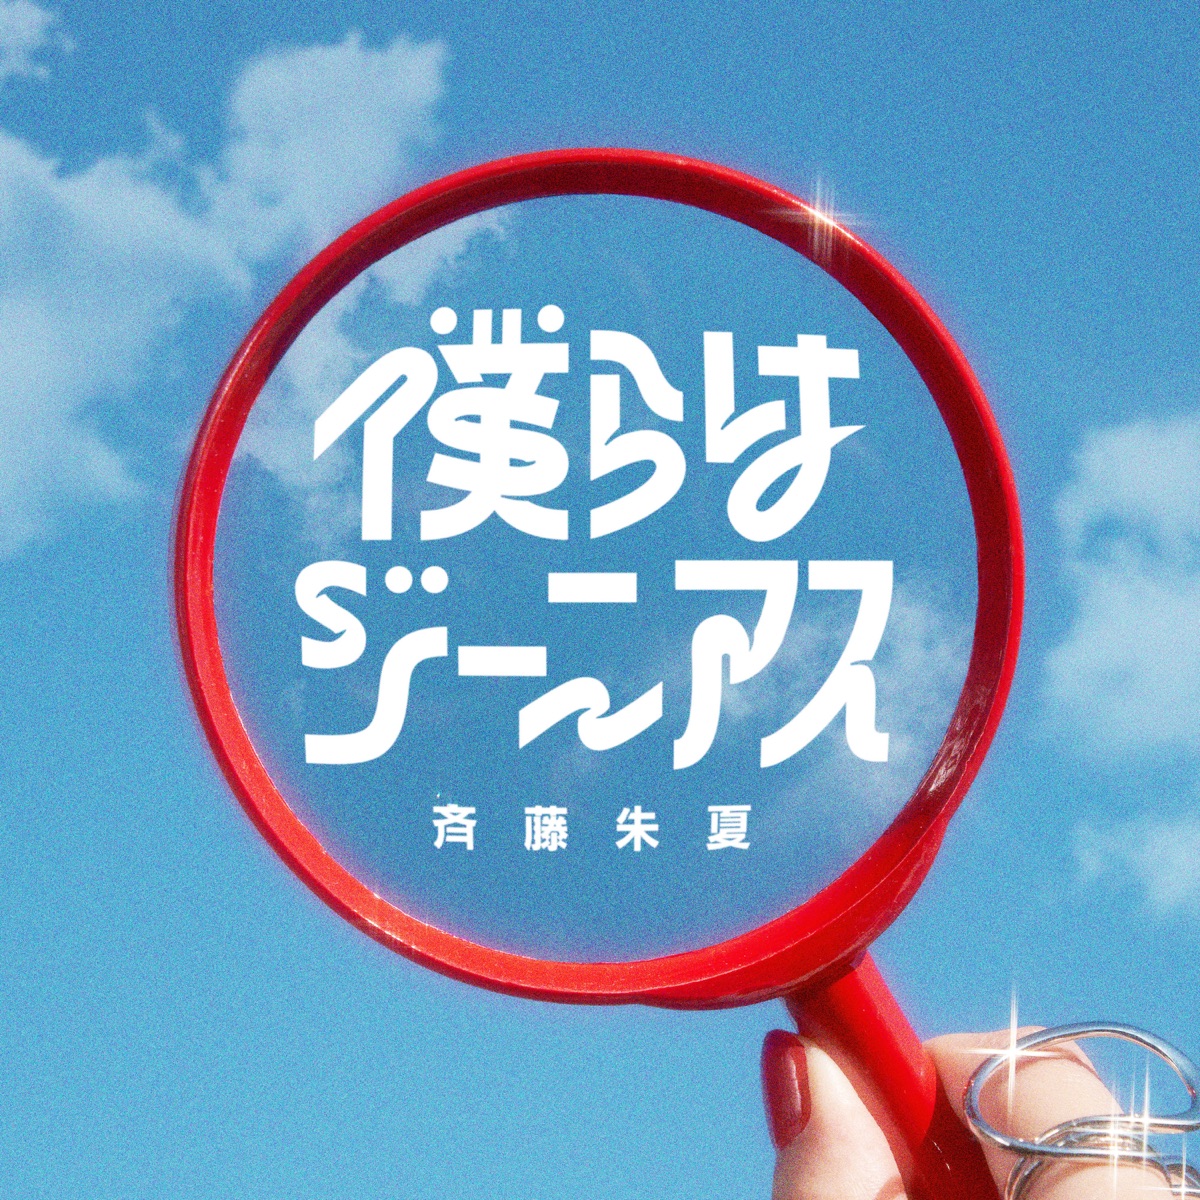 Cover art for『Shuka Saito - 僕らはジーニアス』from the release『Bokura wa Genius